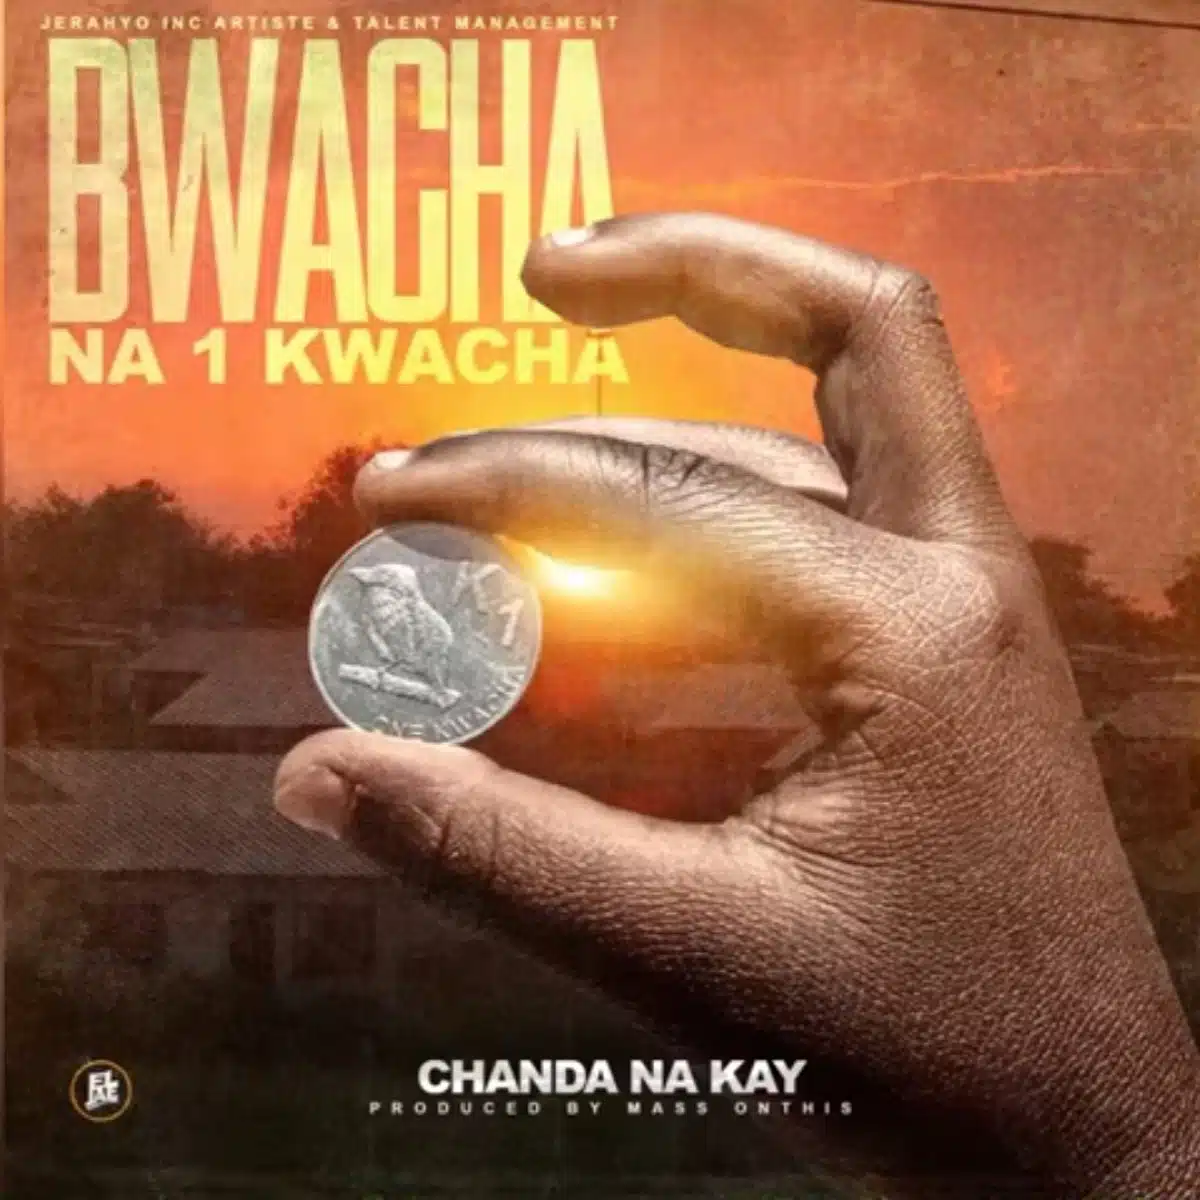 DOWNLOAD: Chanda Na Kay – “Bwacha Na One Kwacha” Mp3